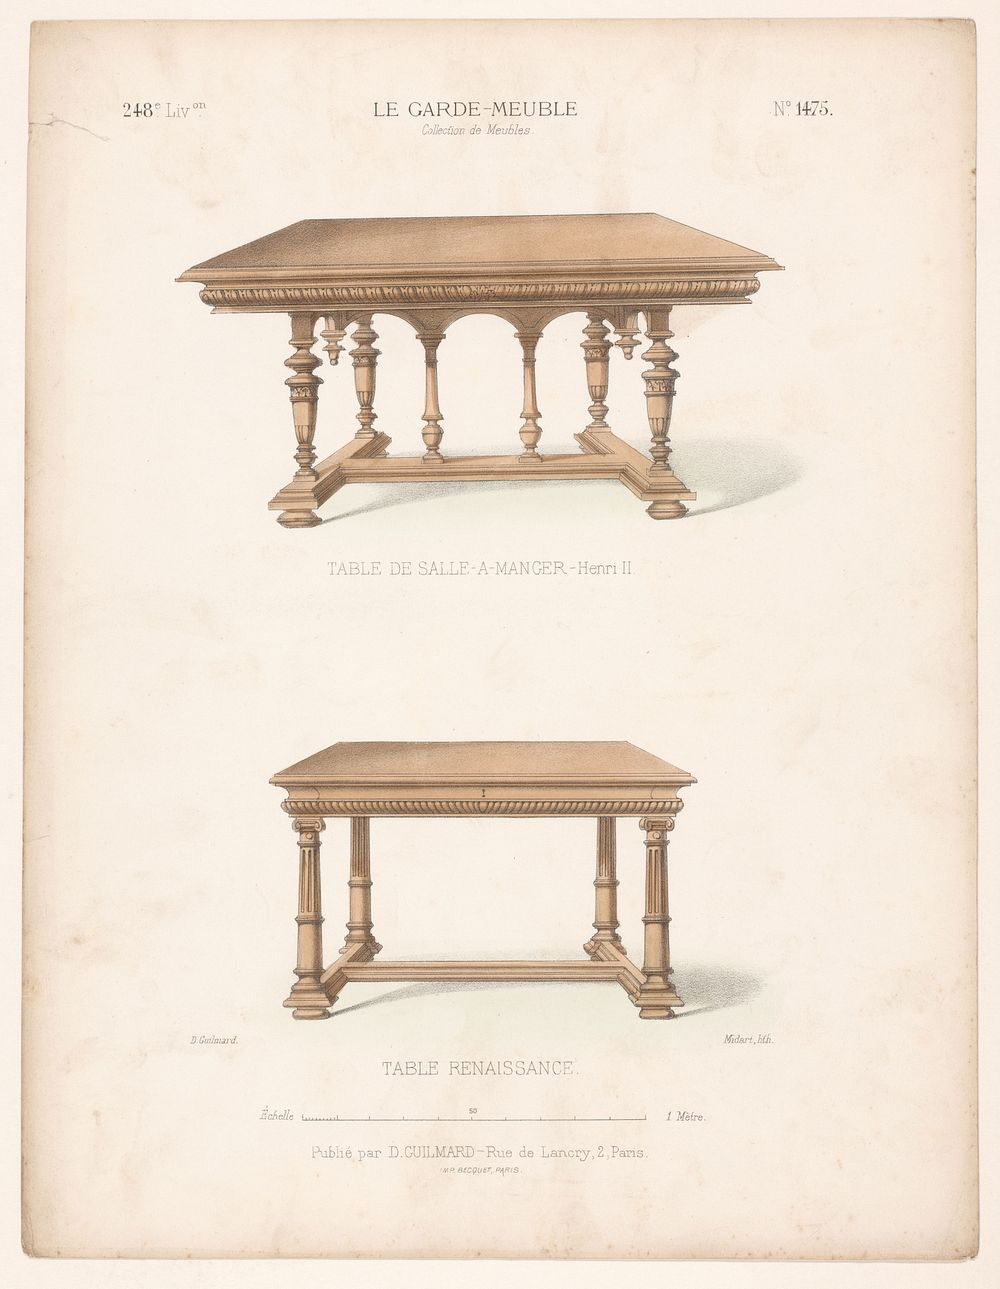 Twee eettafels (1839 - 1885) by Midart, Becquet and Désiré Guilmard